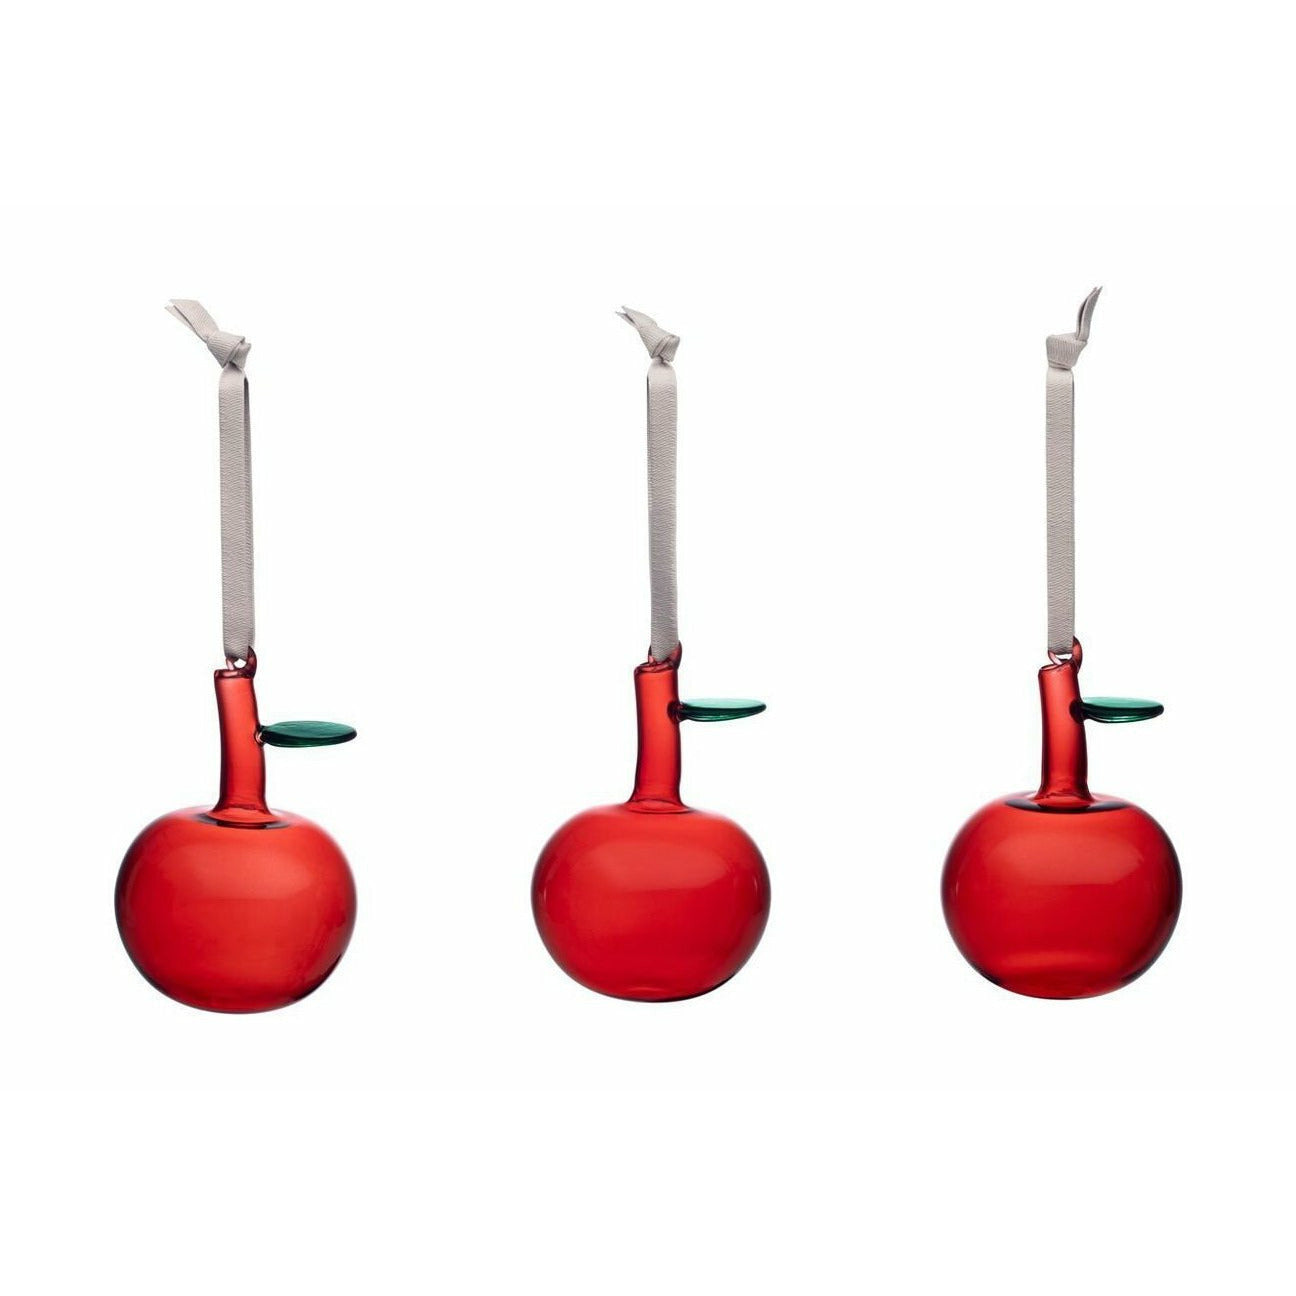 Iittala Dekorationer glas äpple, set med 3, rött